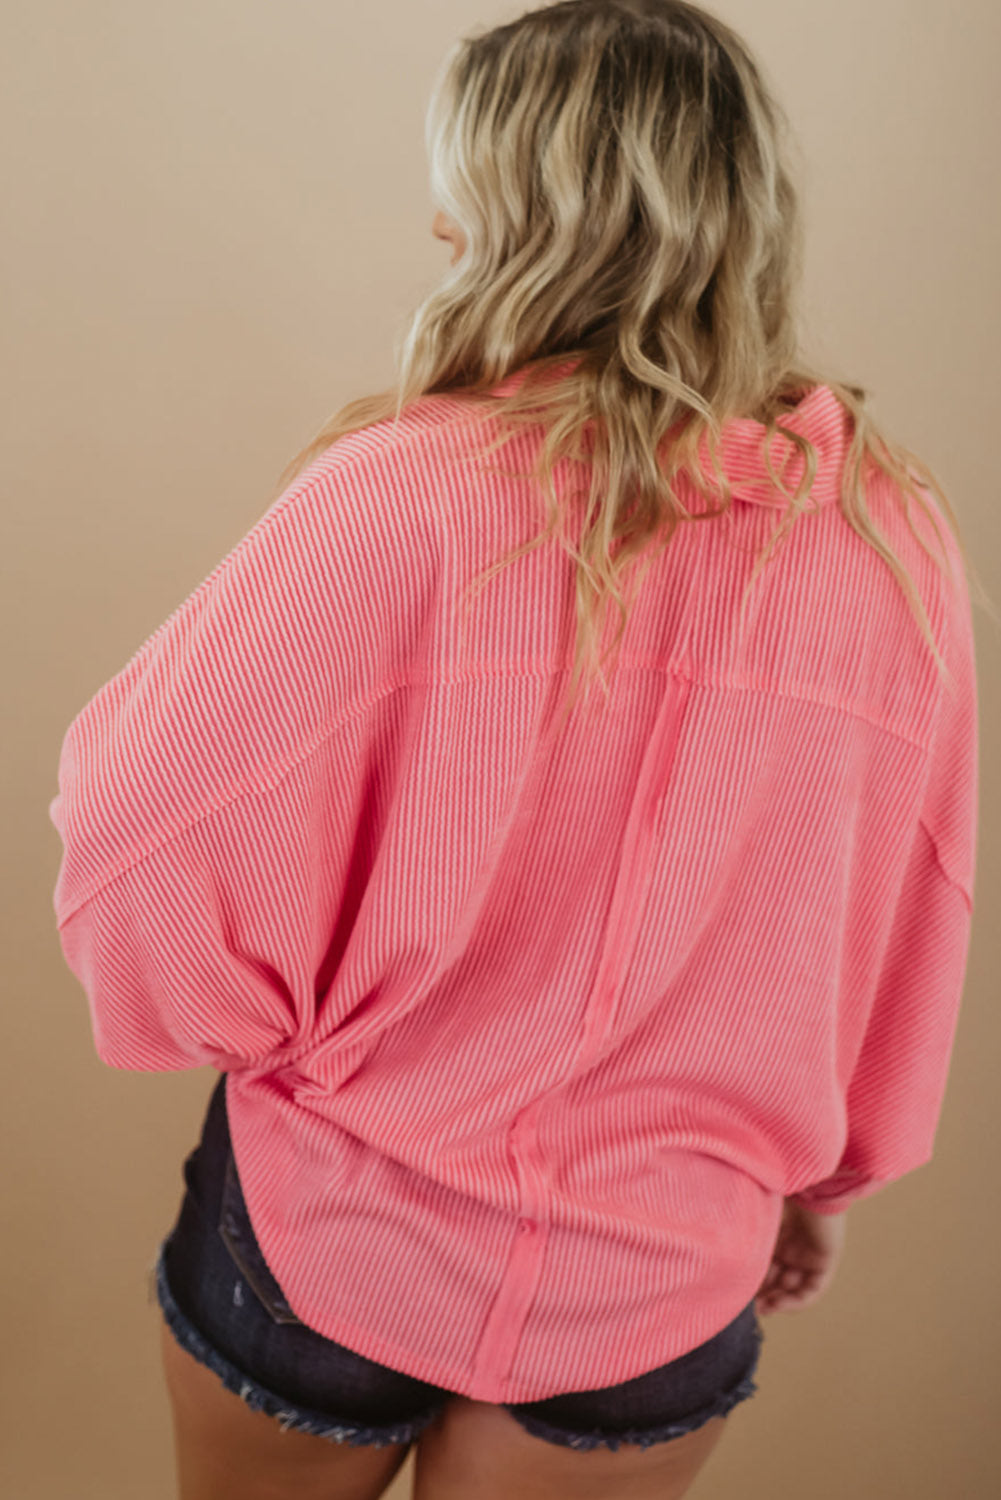 Rožnata majica z dolgimi rokavi in ​​rebrastimi žepi velike velikosti